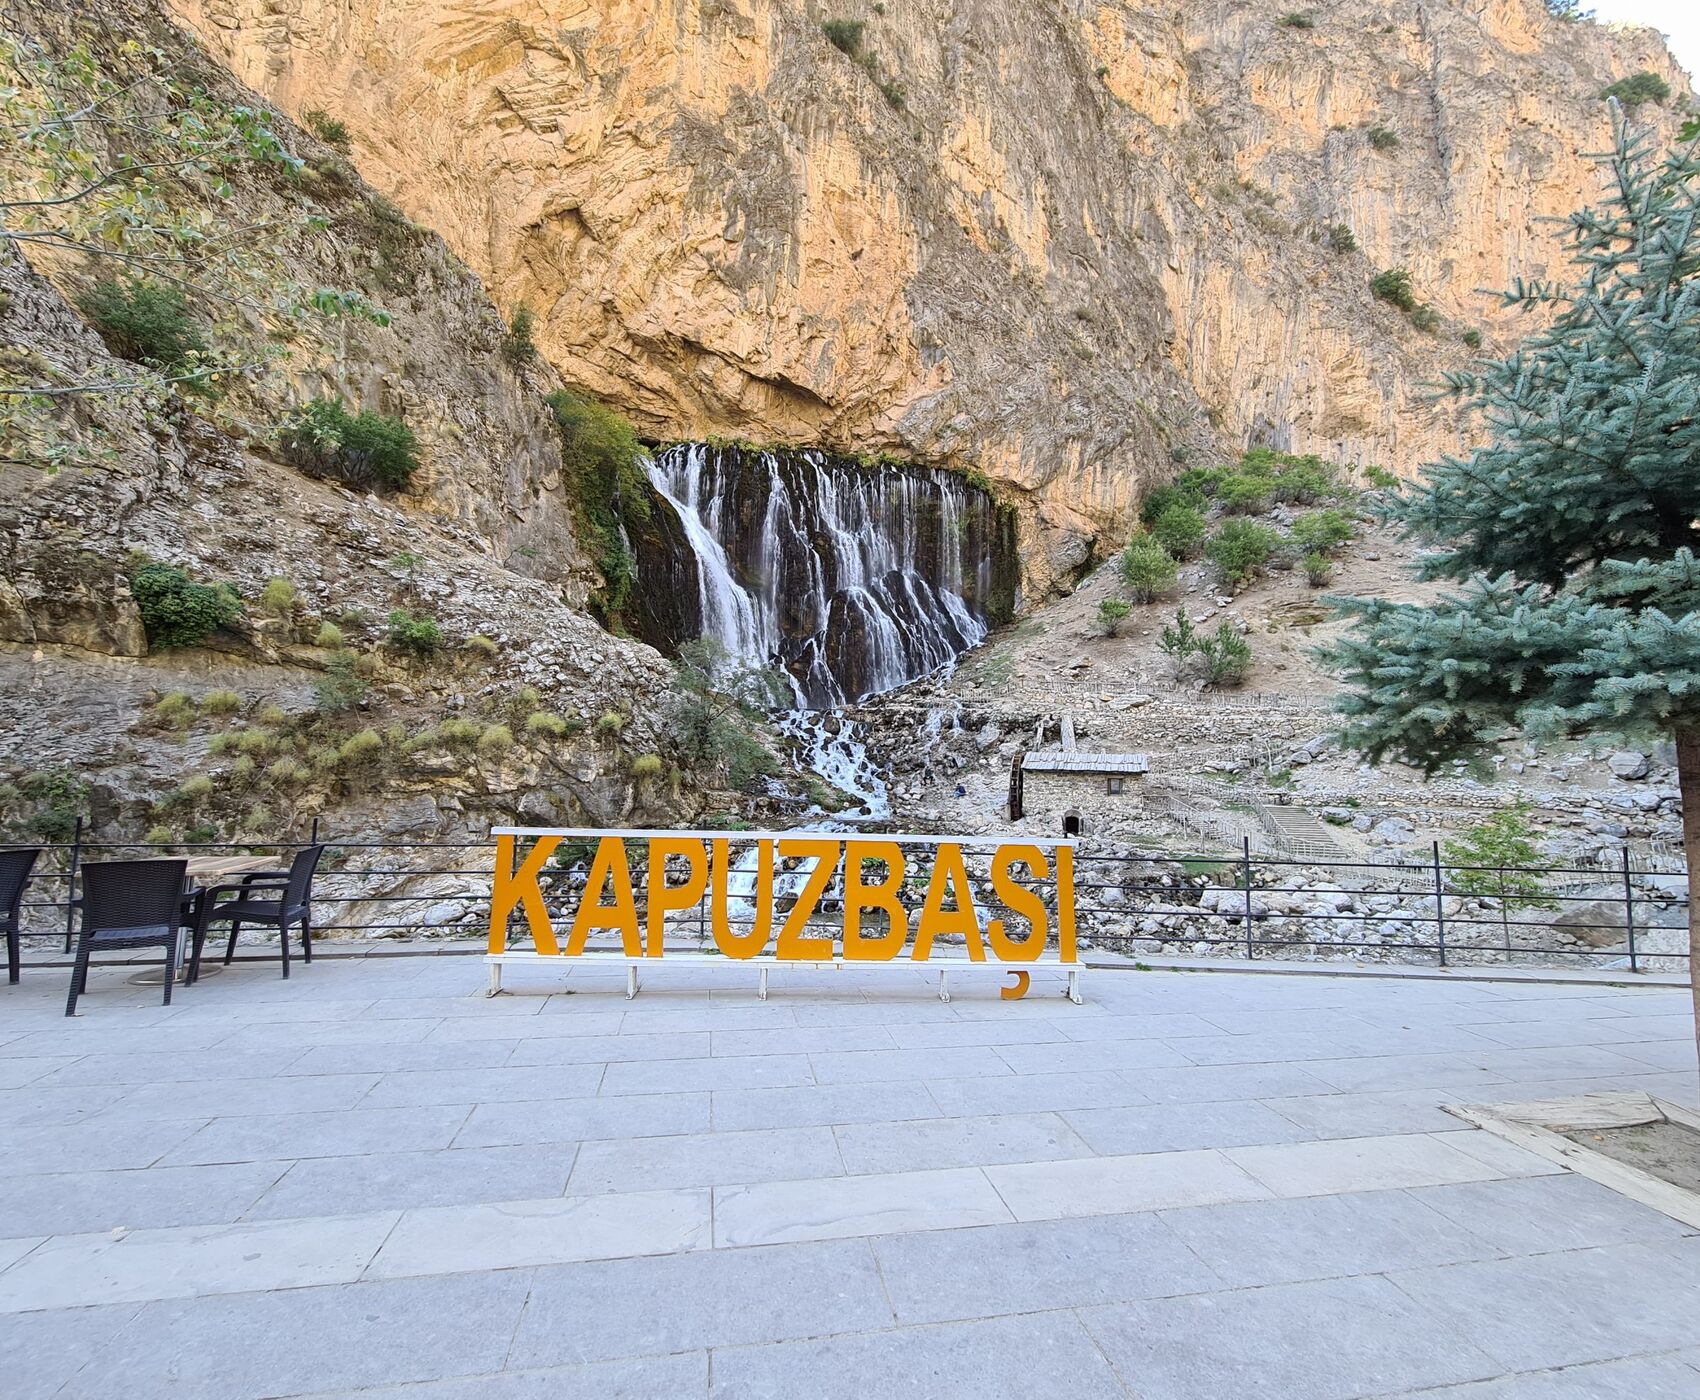 CAPPADOCIA TOUR - KAPUZBAŞI WATERFALLS - SULTAN REEDS 3 DAYS